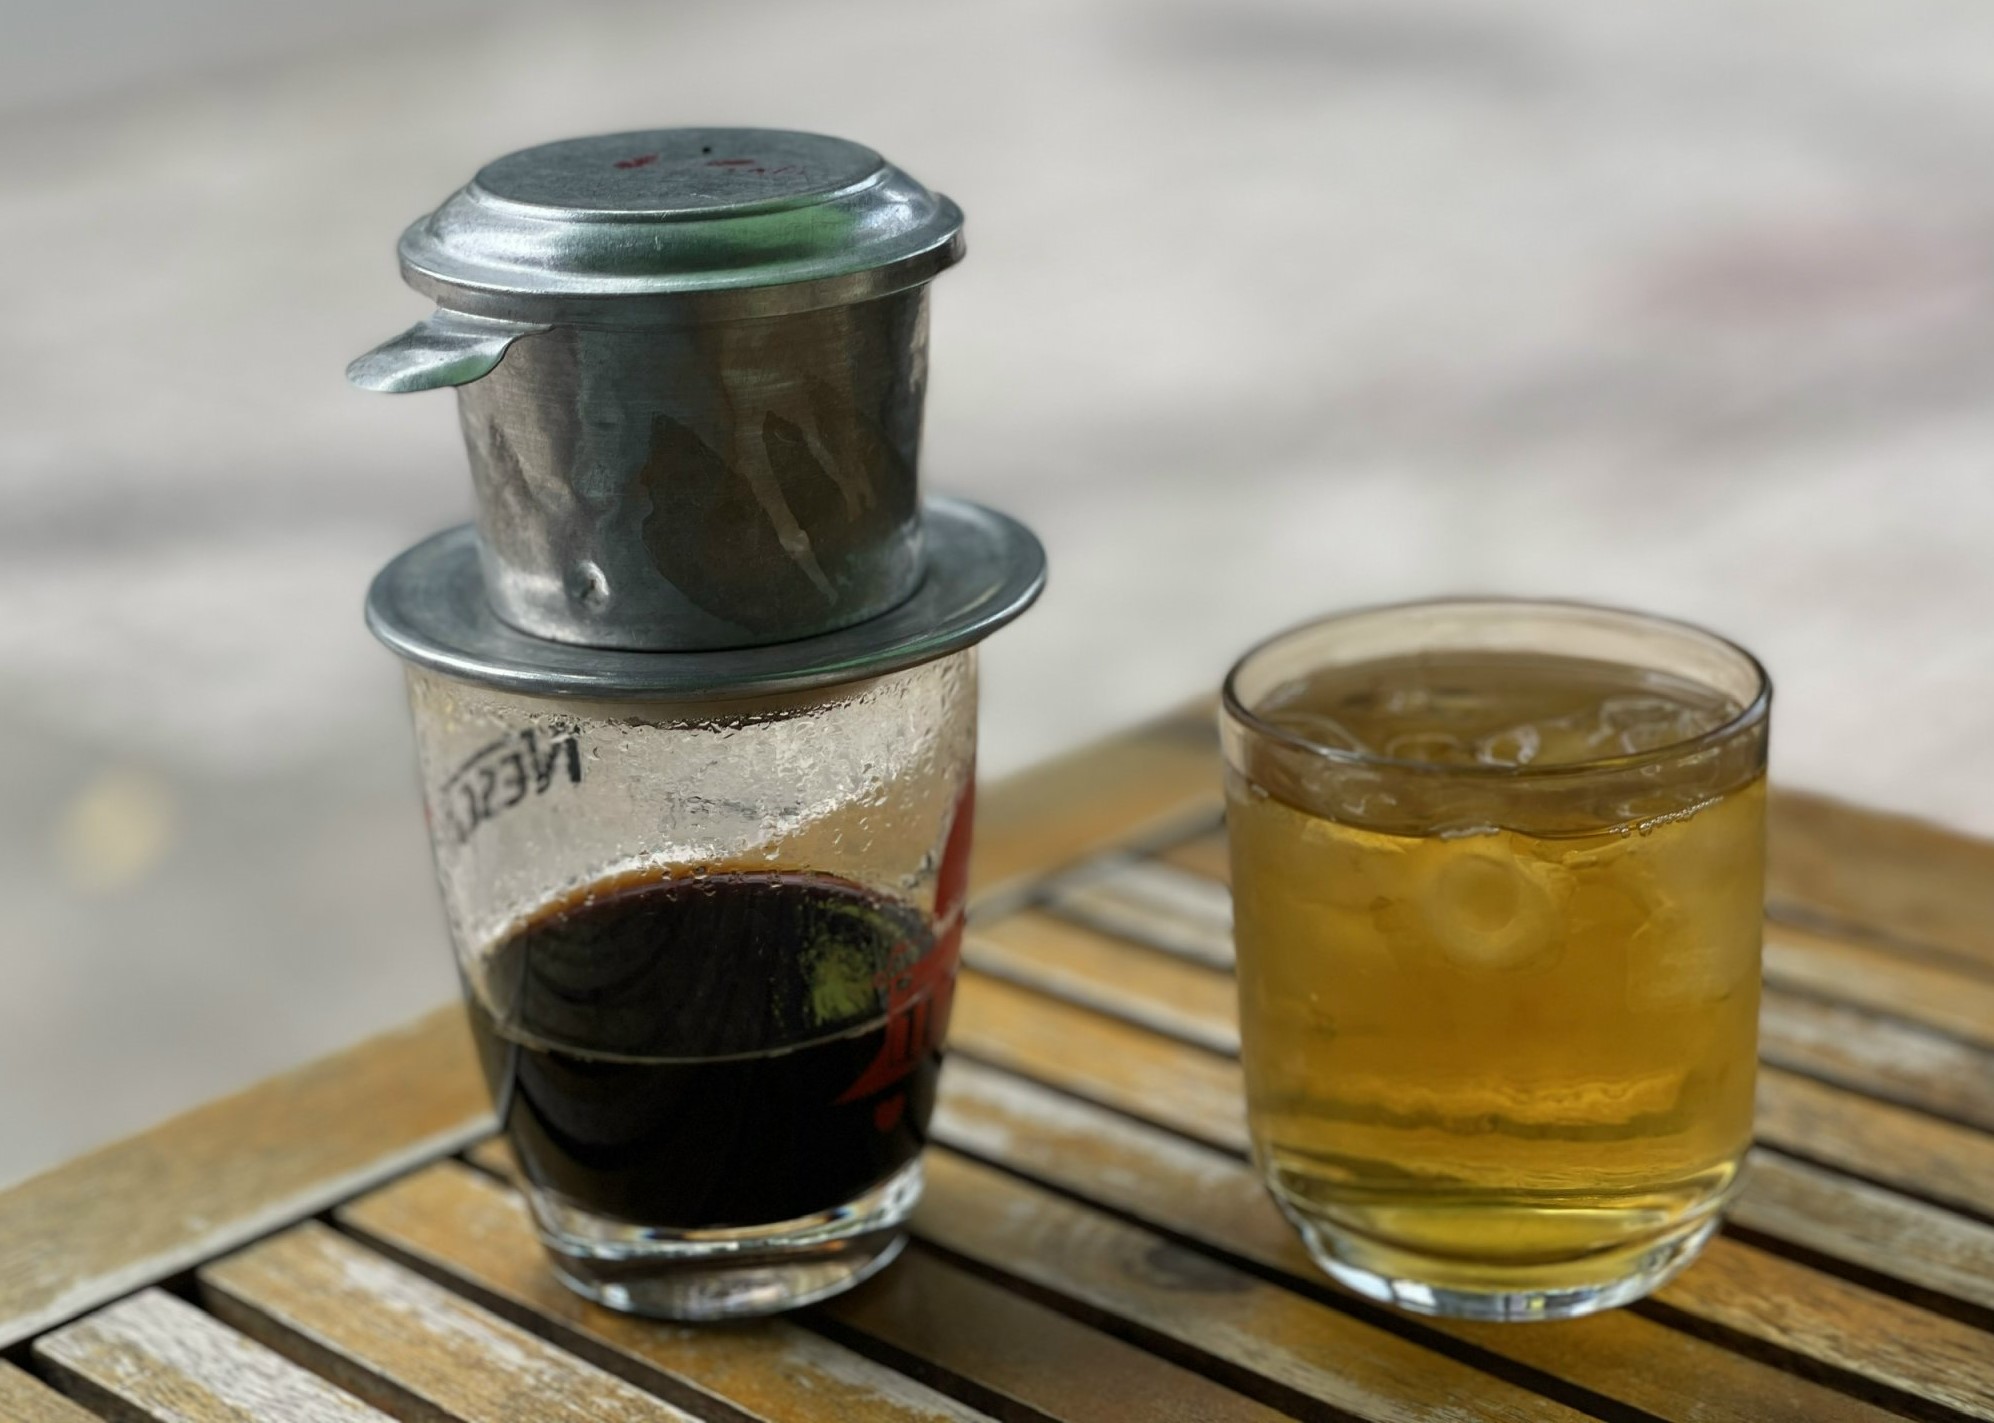 Hình ảnh ly cà phê phin và cốc trà đá vỉa hè.